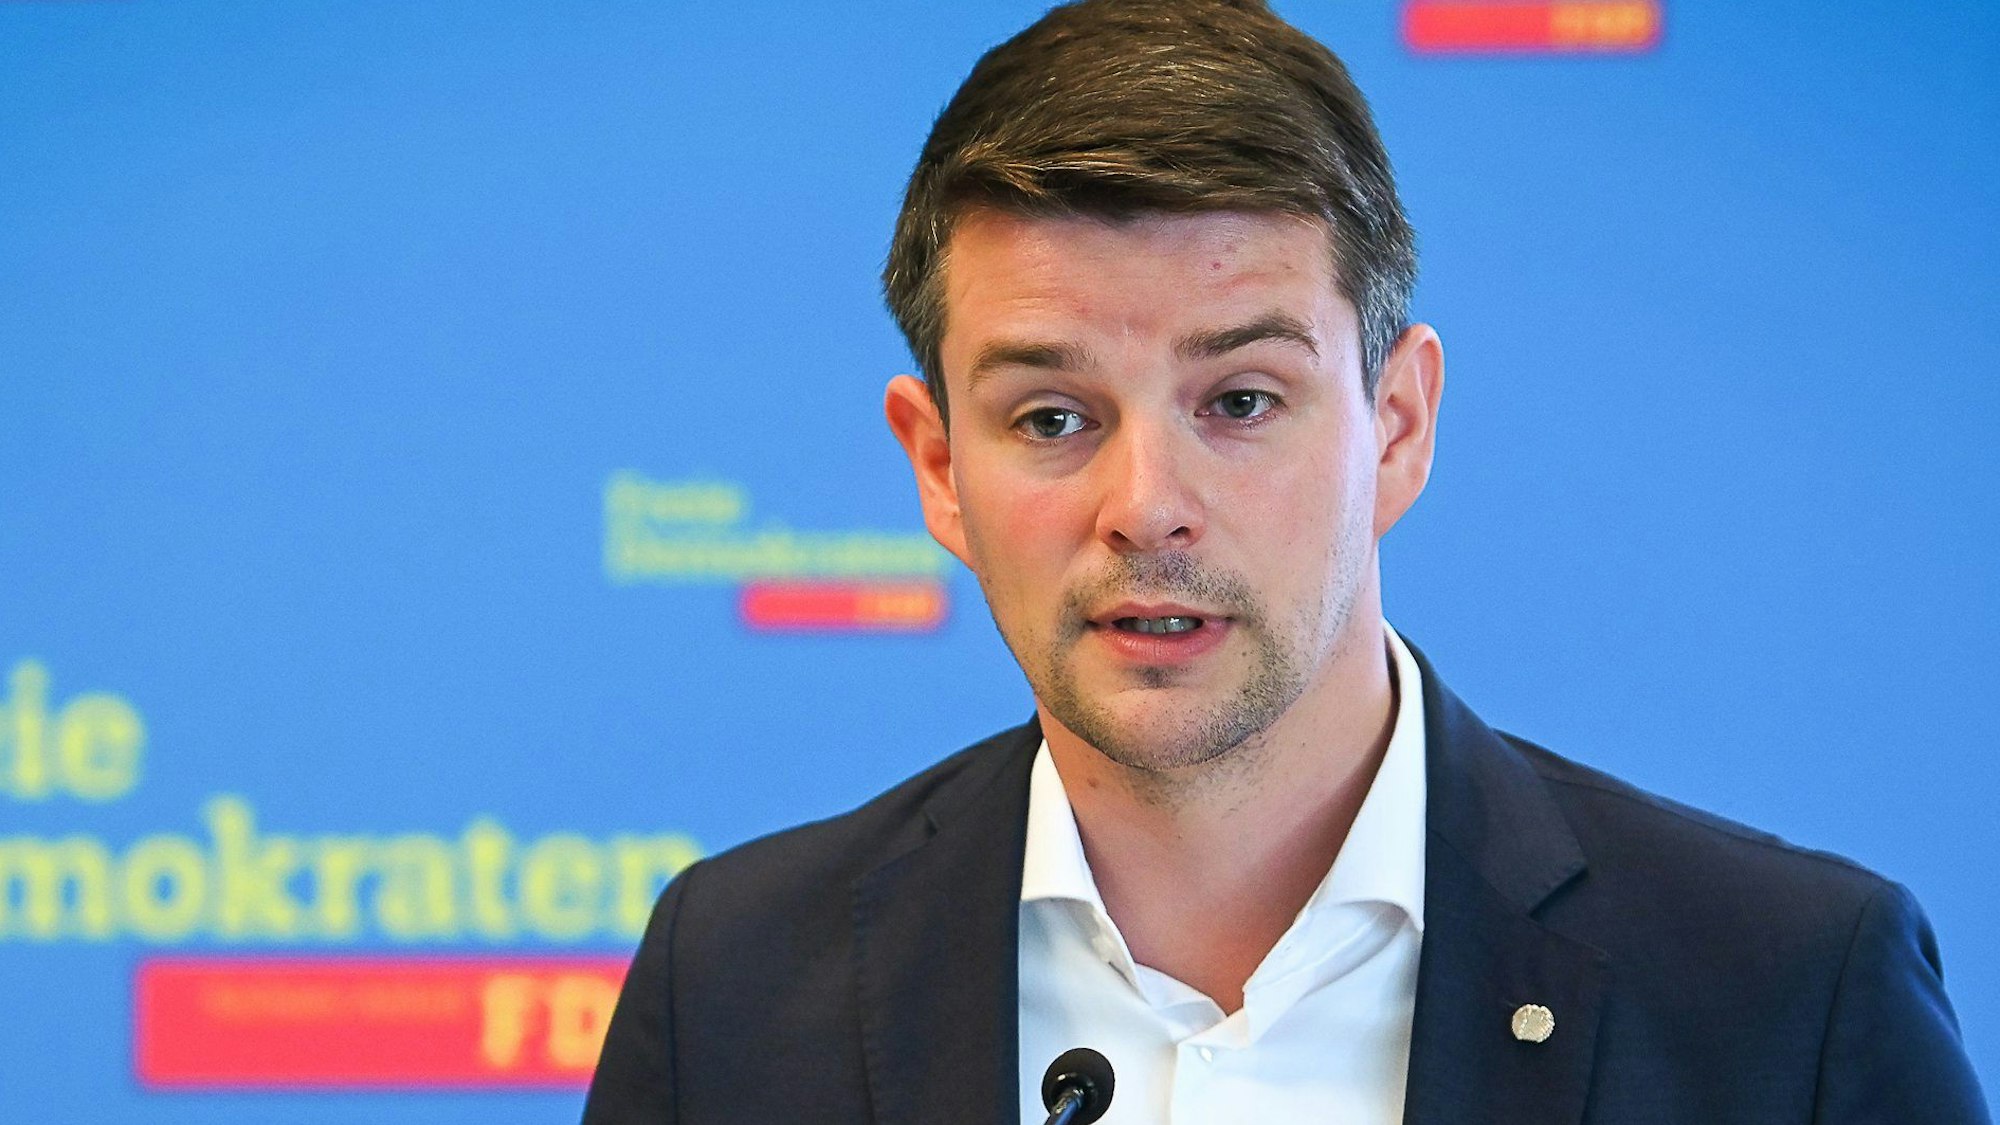 FDP-Politiker Marcus Faber, hier am 24.07.2021 in Magdeburg, verzichtet nach umstrittenen Aussagen über Bundeskanzler Olaf Scholz (SPD) auf das Amt des verteidigungspolitischen Sprechers seiner Fraktion.